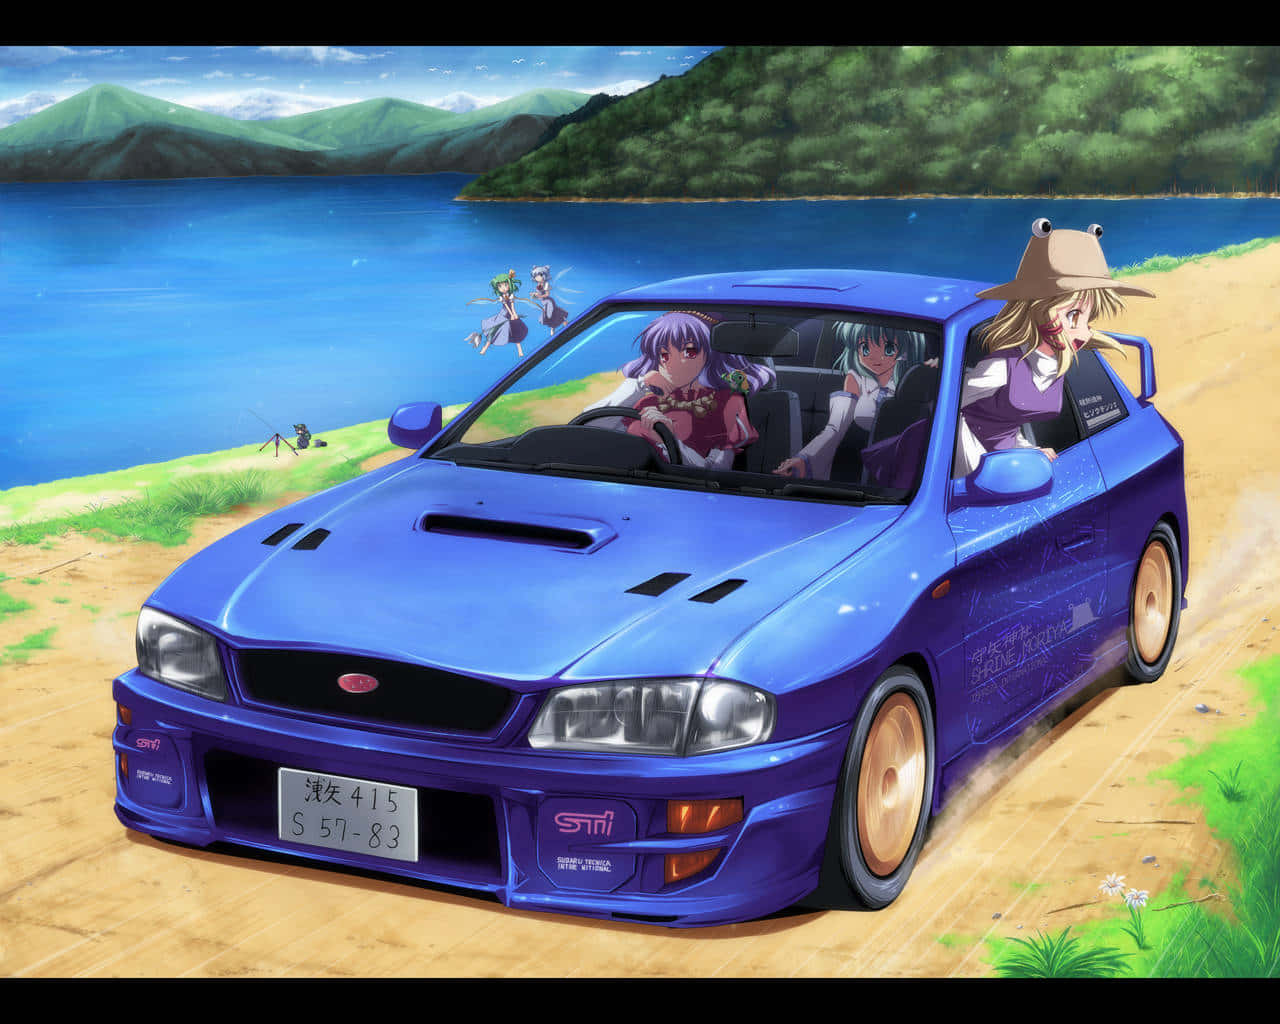 Körigenom Äventyr I Rask Takt Med En Anime-bil.